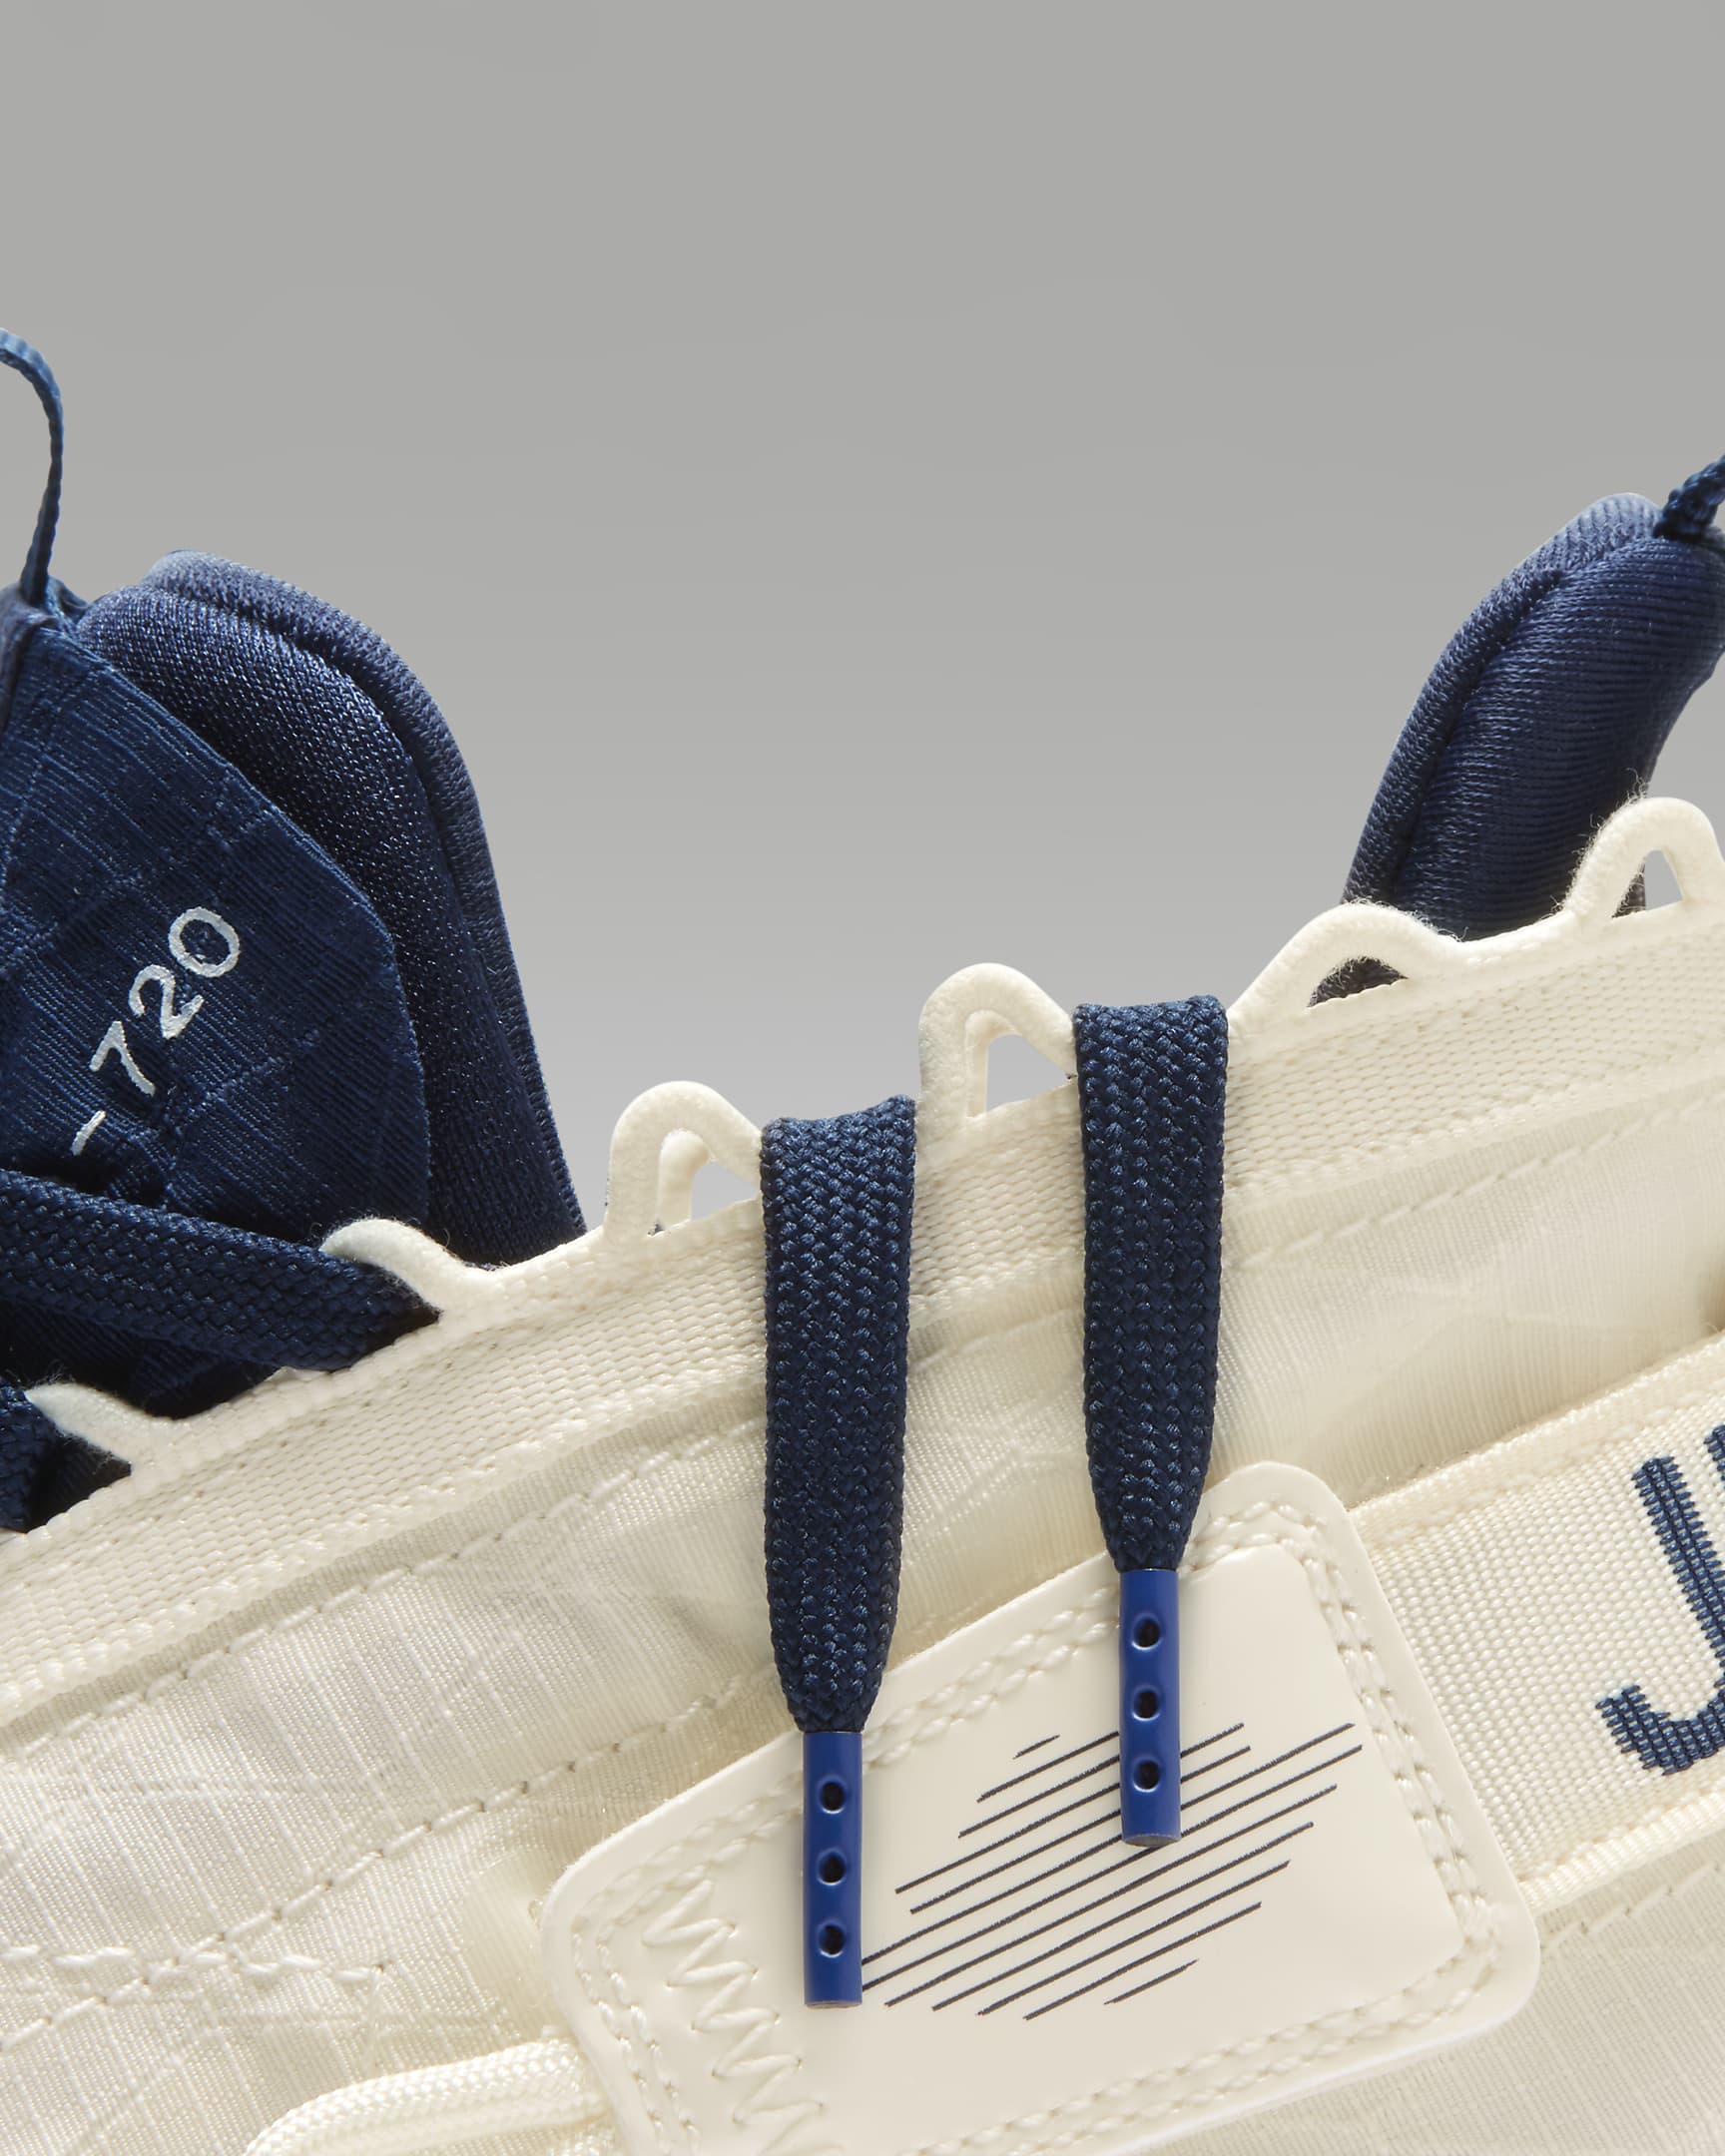 Jordan Proto-Max 720 Shoes. Nike PT